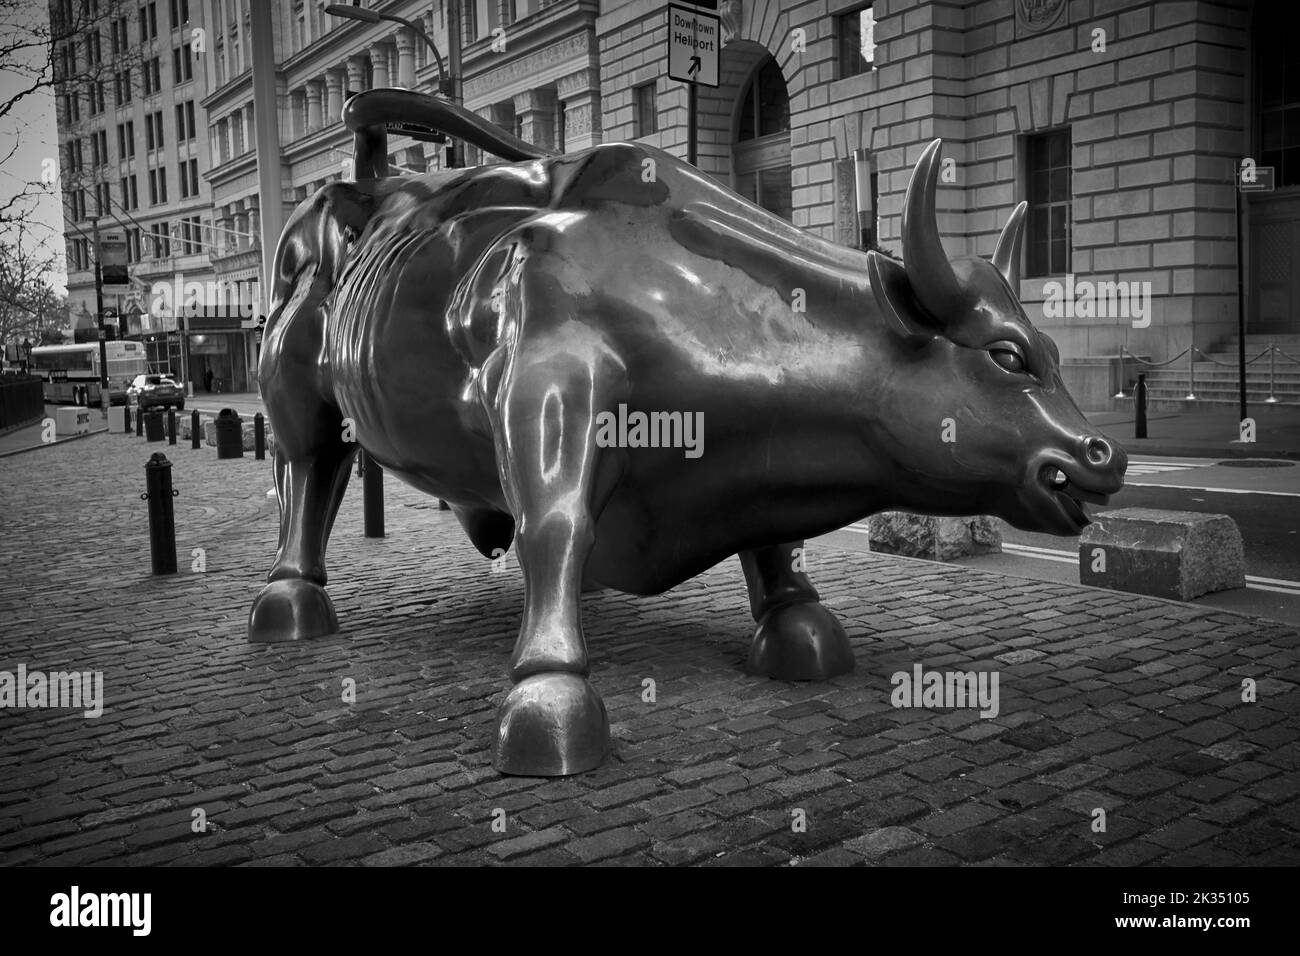 Charging Bull ist ein beliebtes Touristenziel, das Tausende von Menschen anzieht und die Wall Street und den Finanzdistrikt symbolisiert. Stockfoto